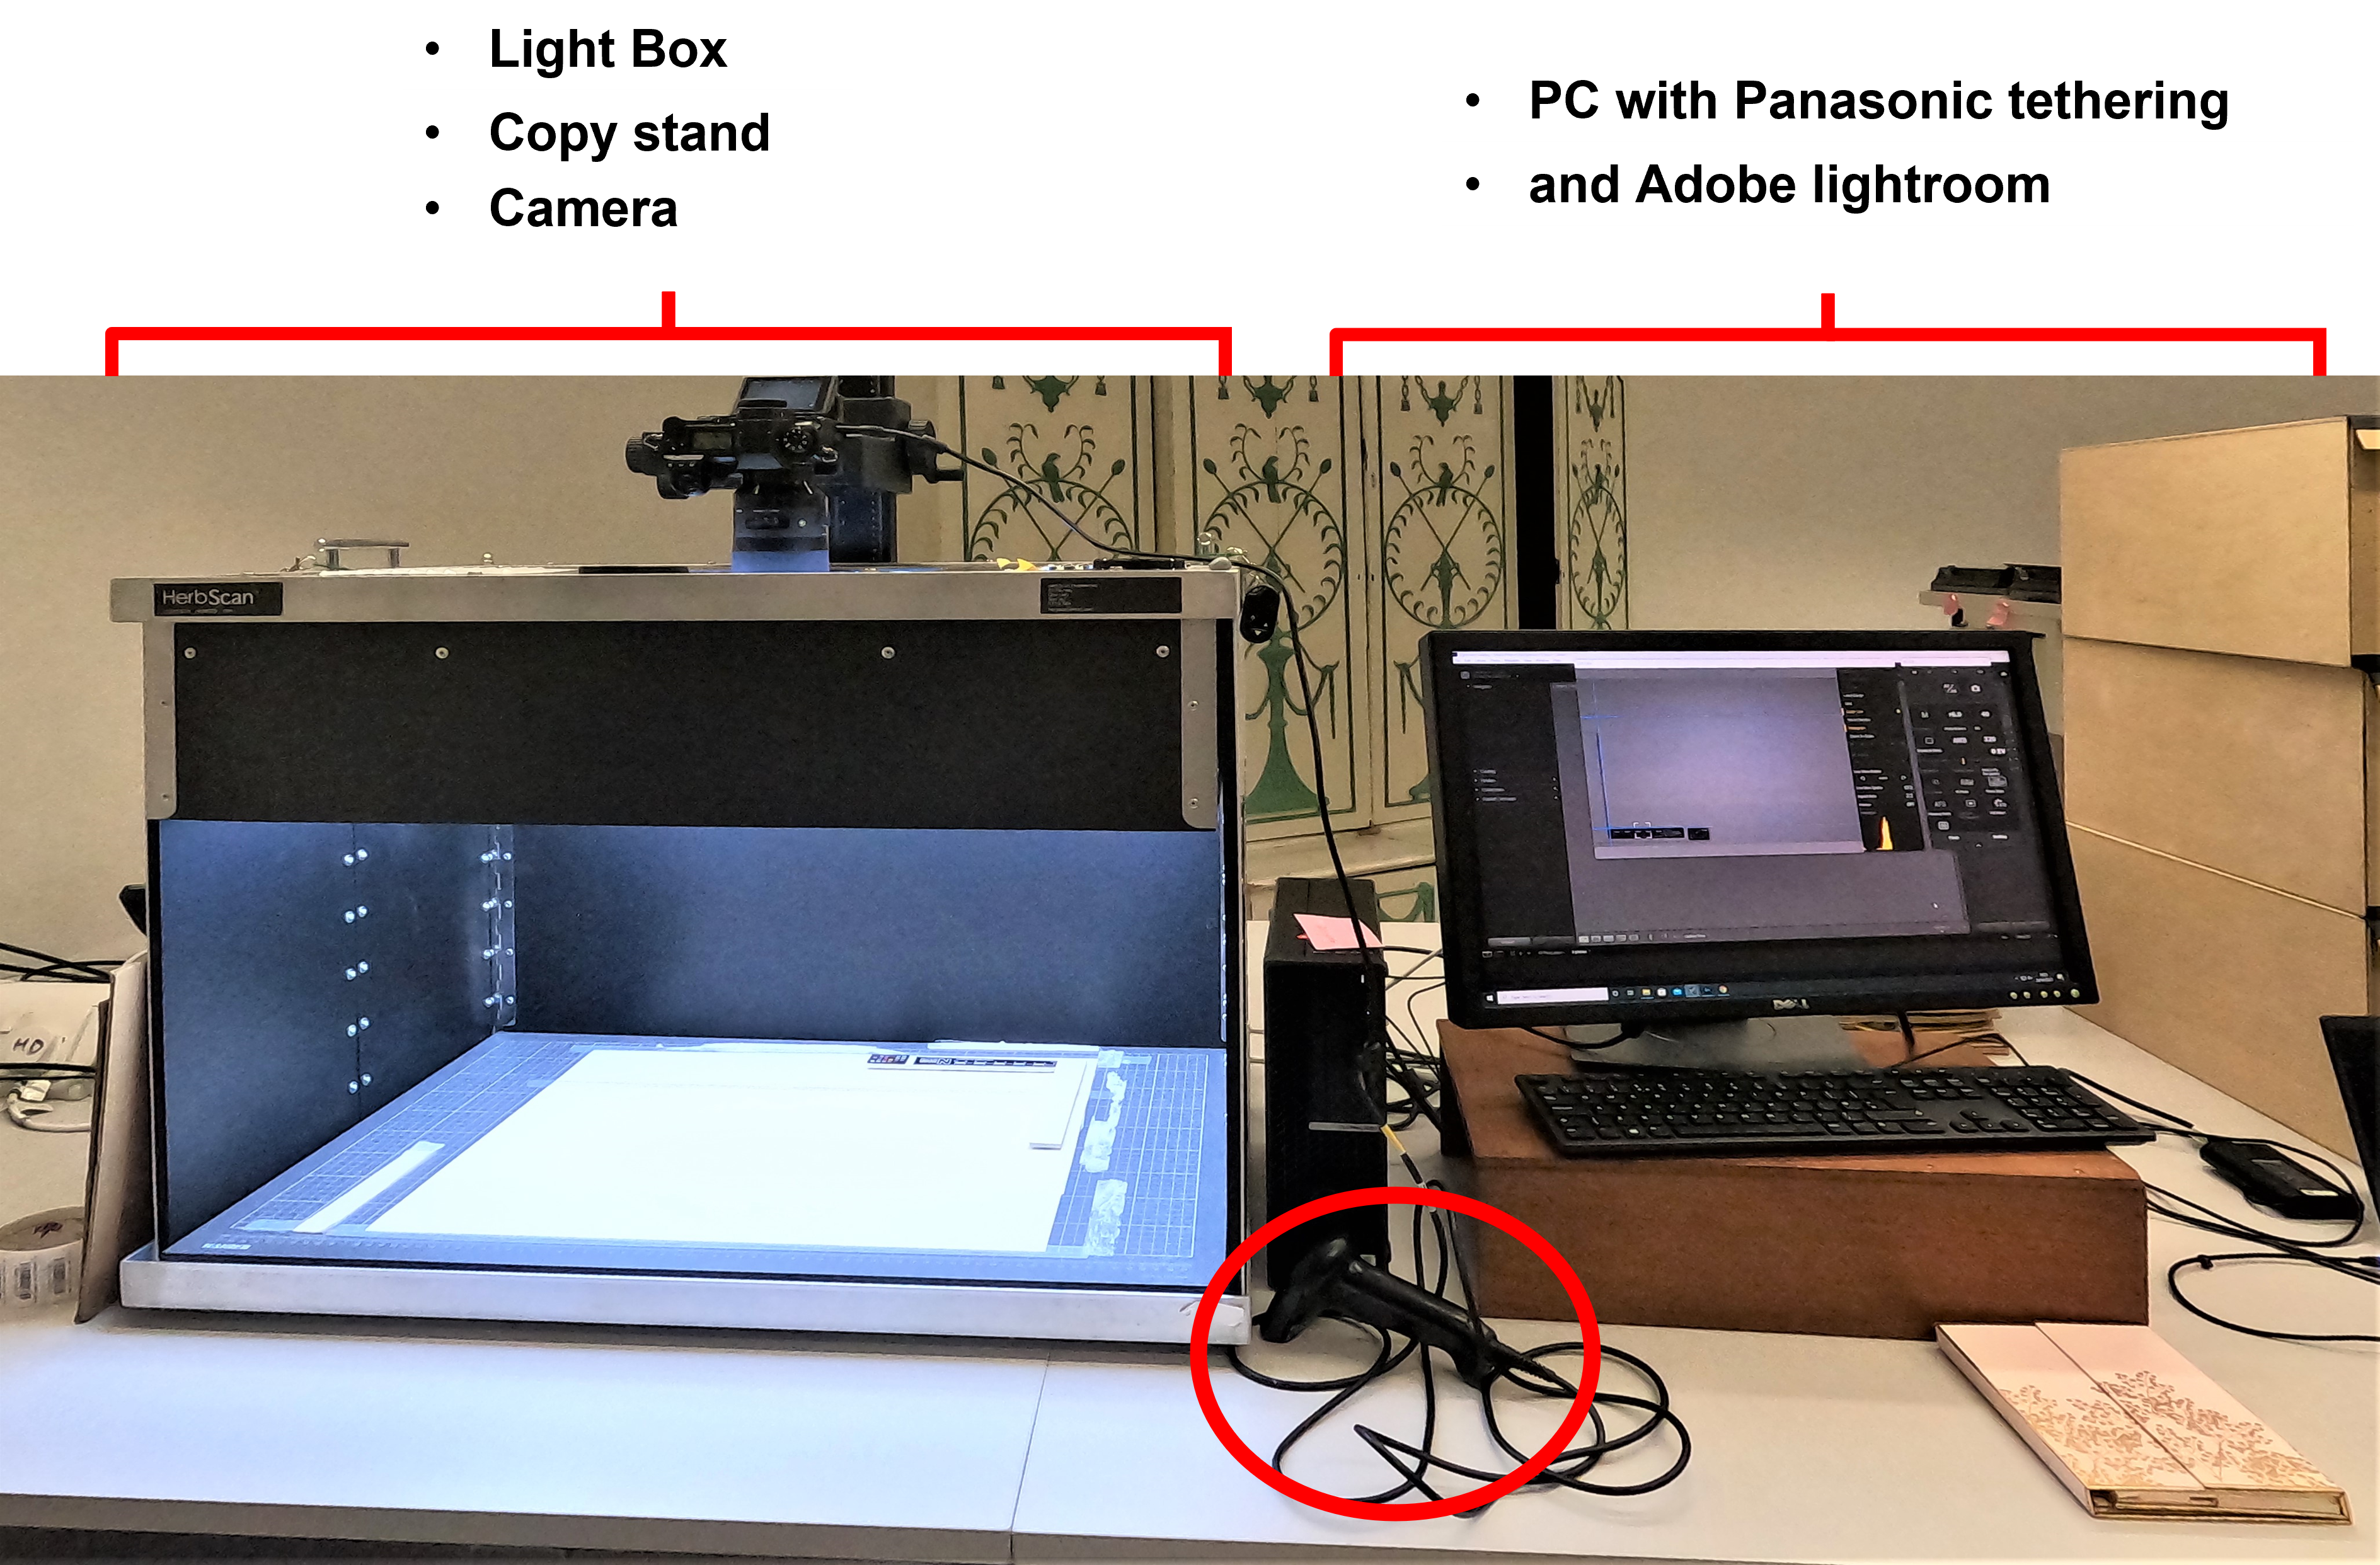 shows imaging station set up